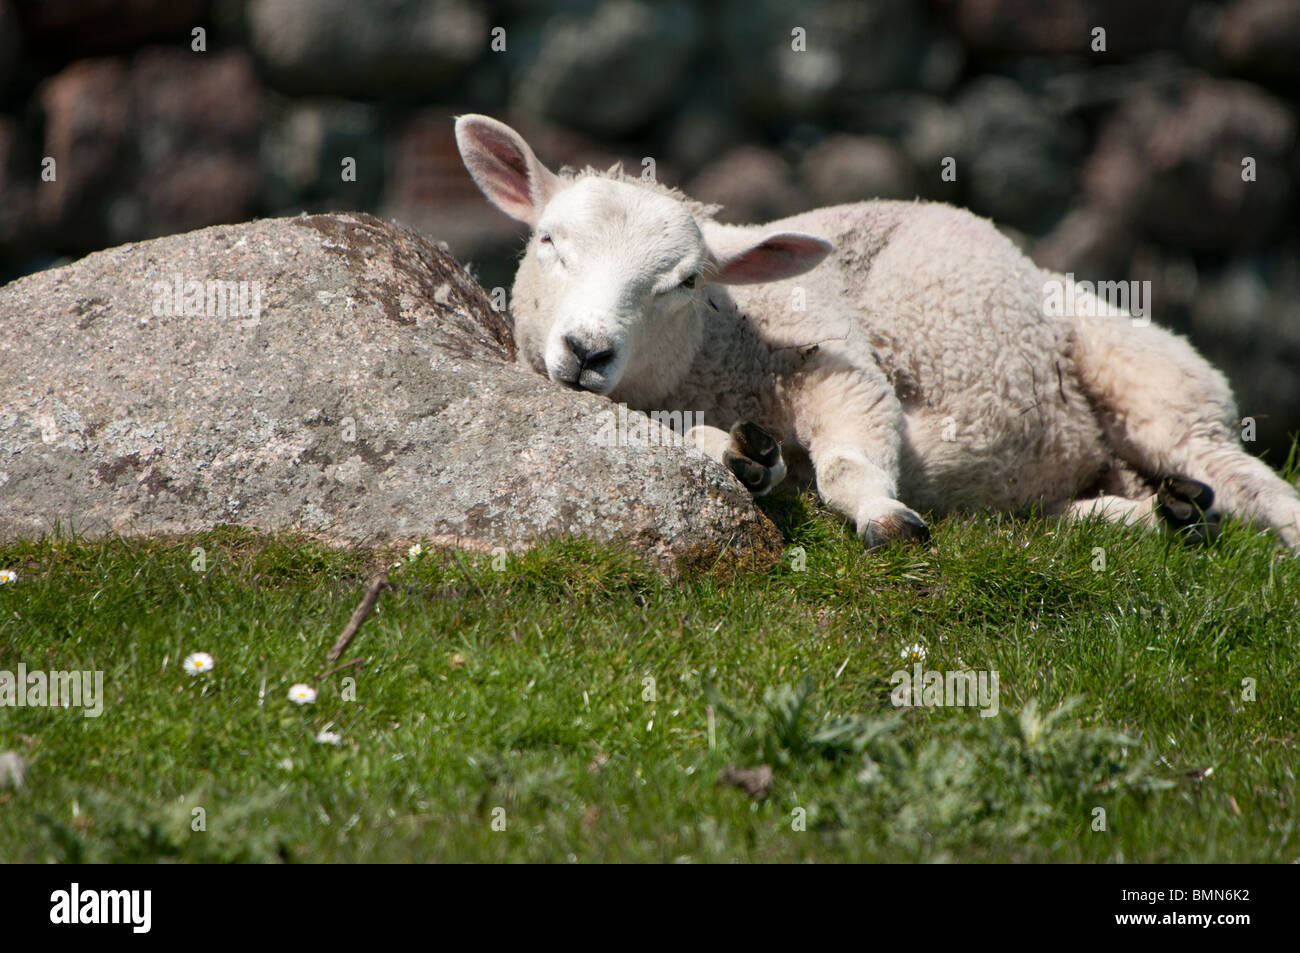 Lamb using rock as pillow Stock Photo